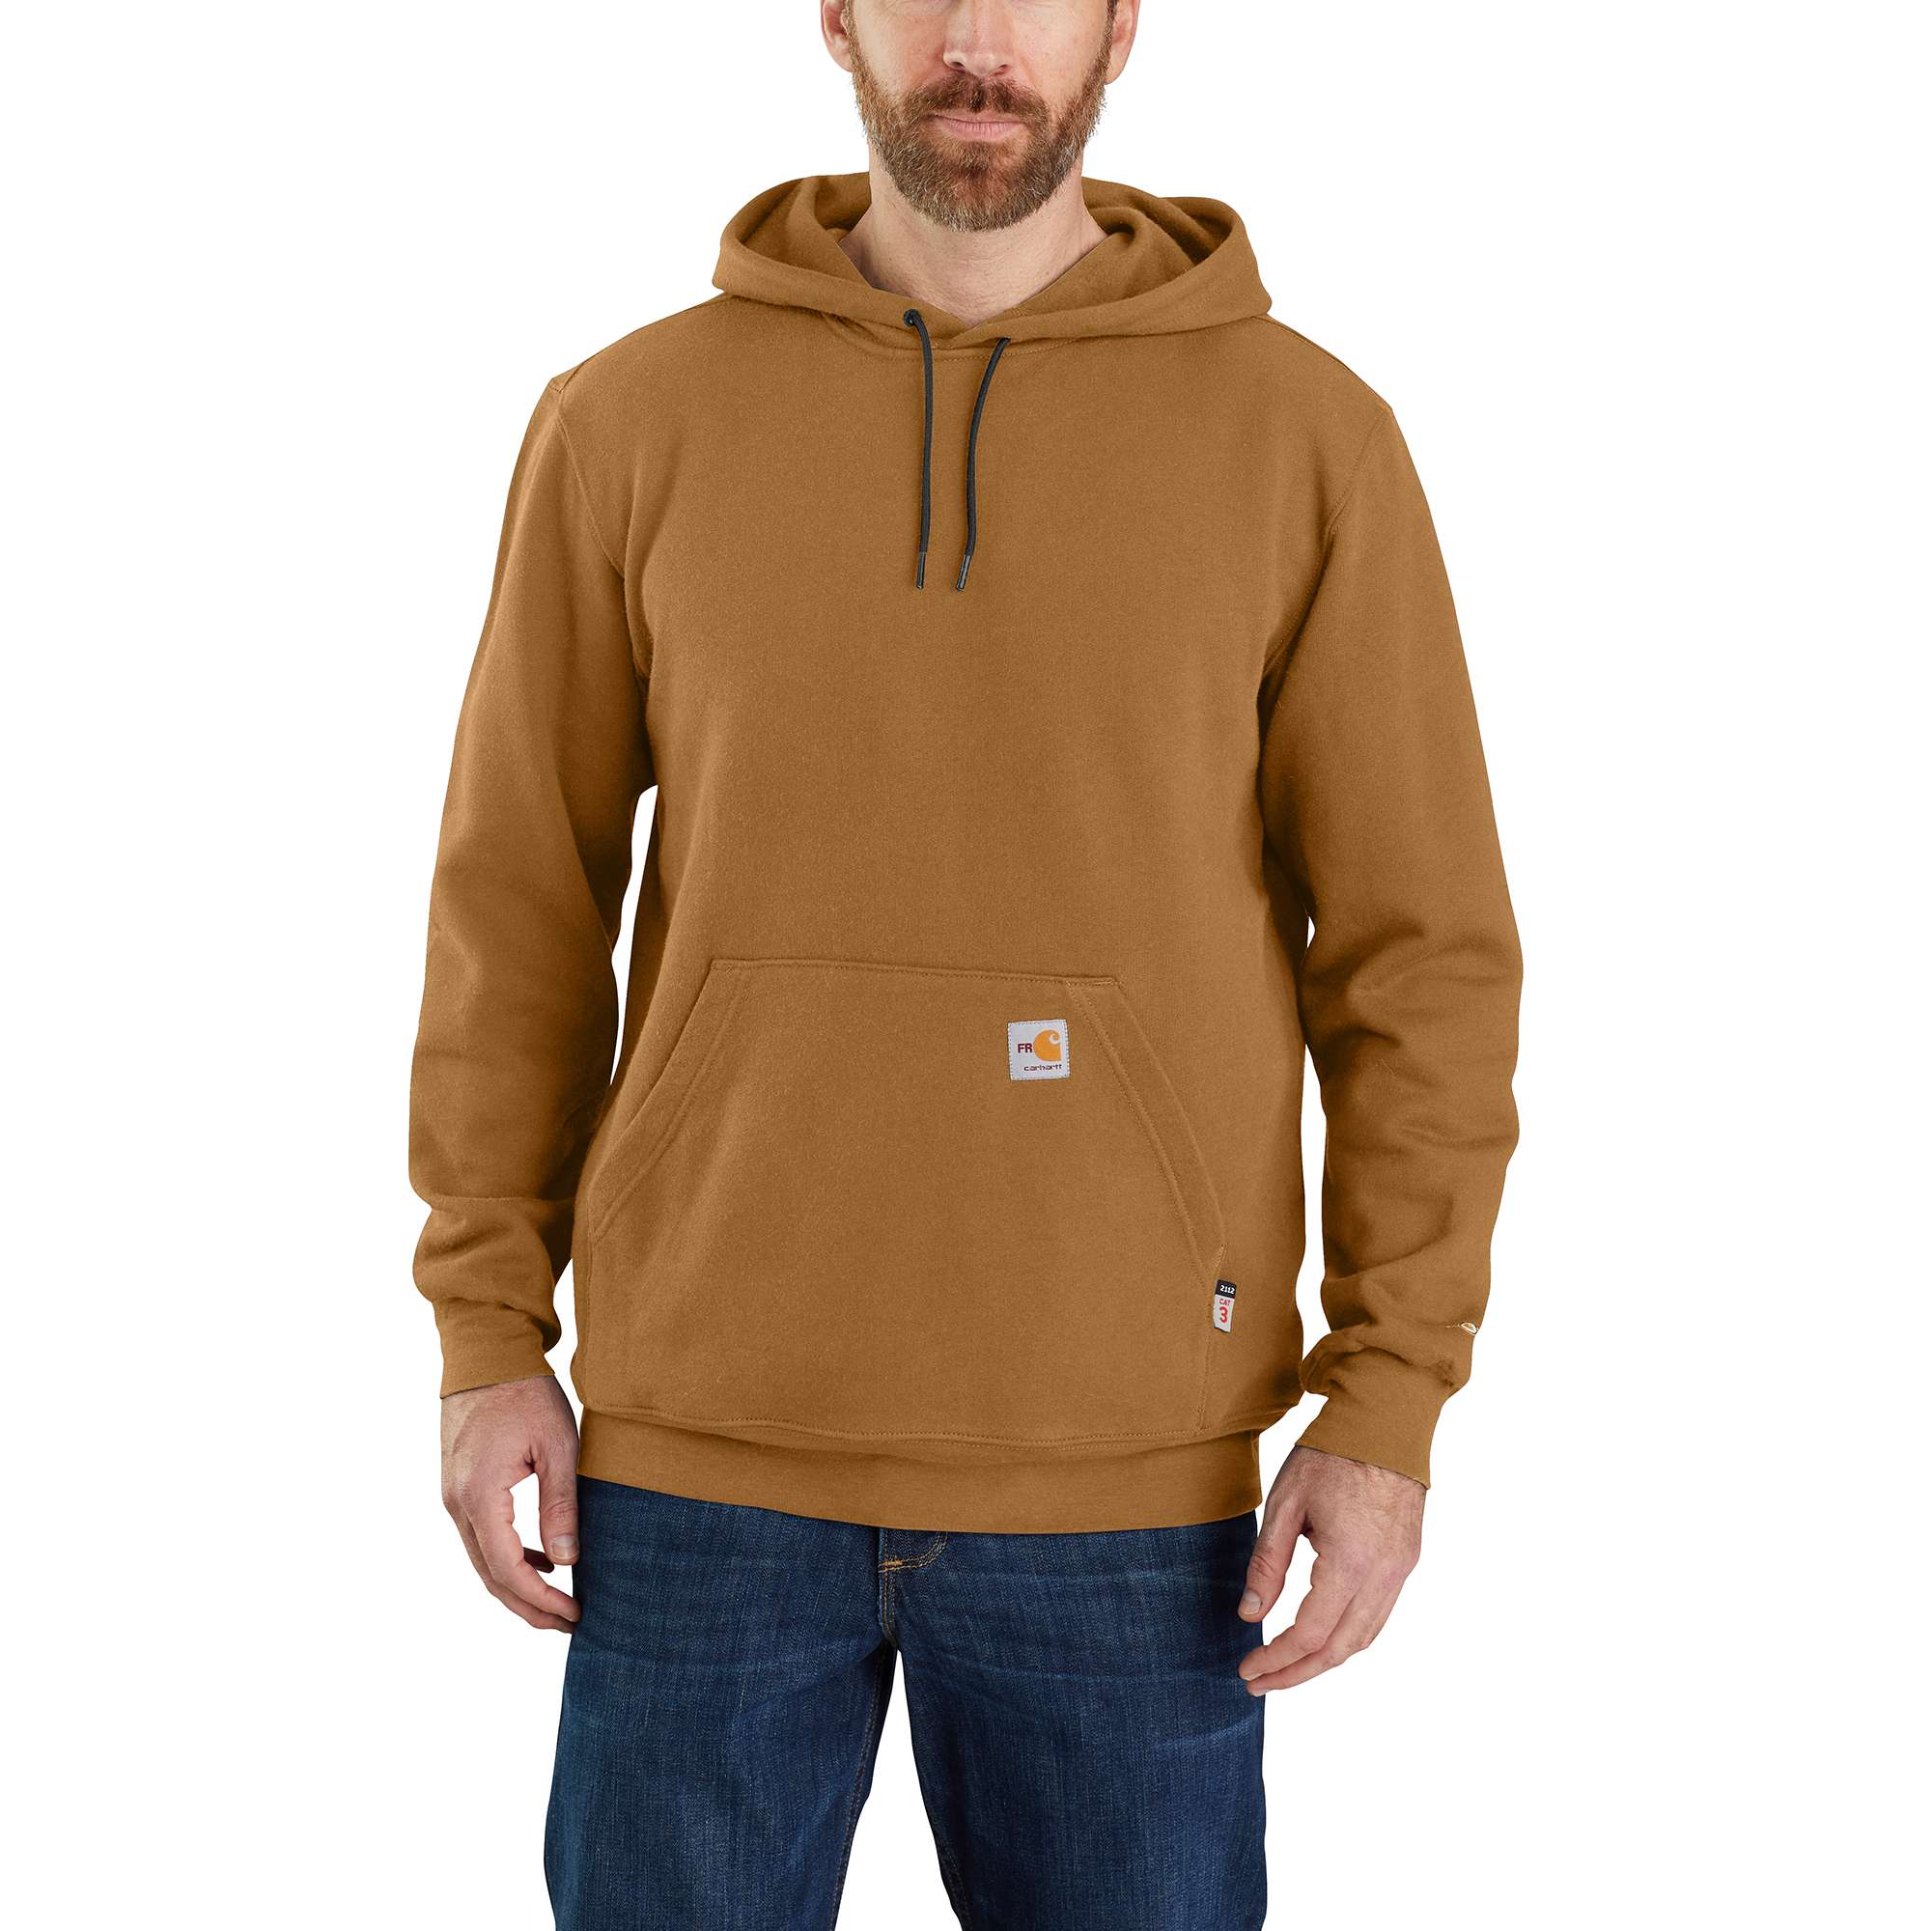 Men's Hoodies & Sweatshirts | Carhartt